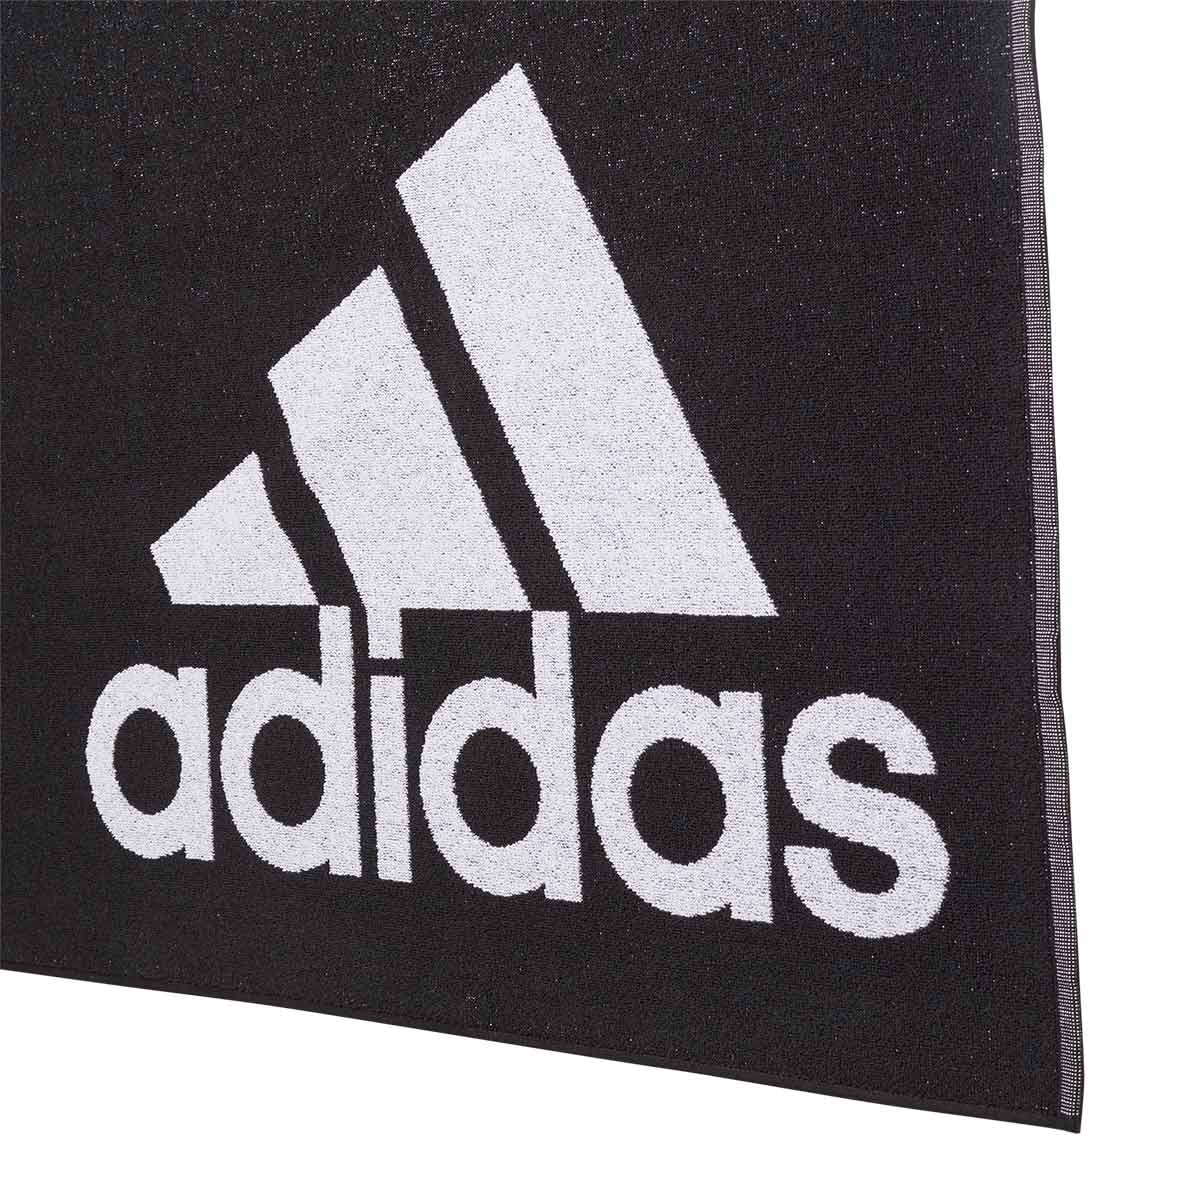 black adidas football towel